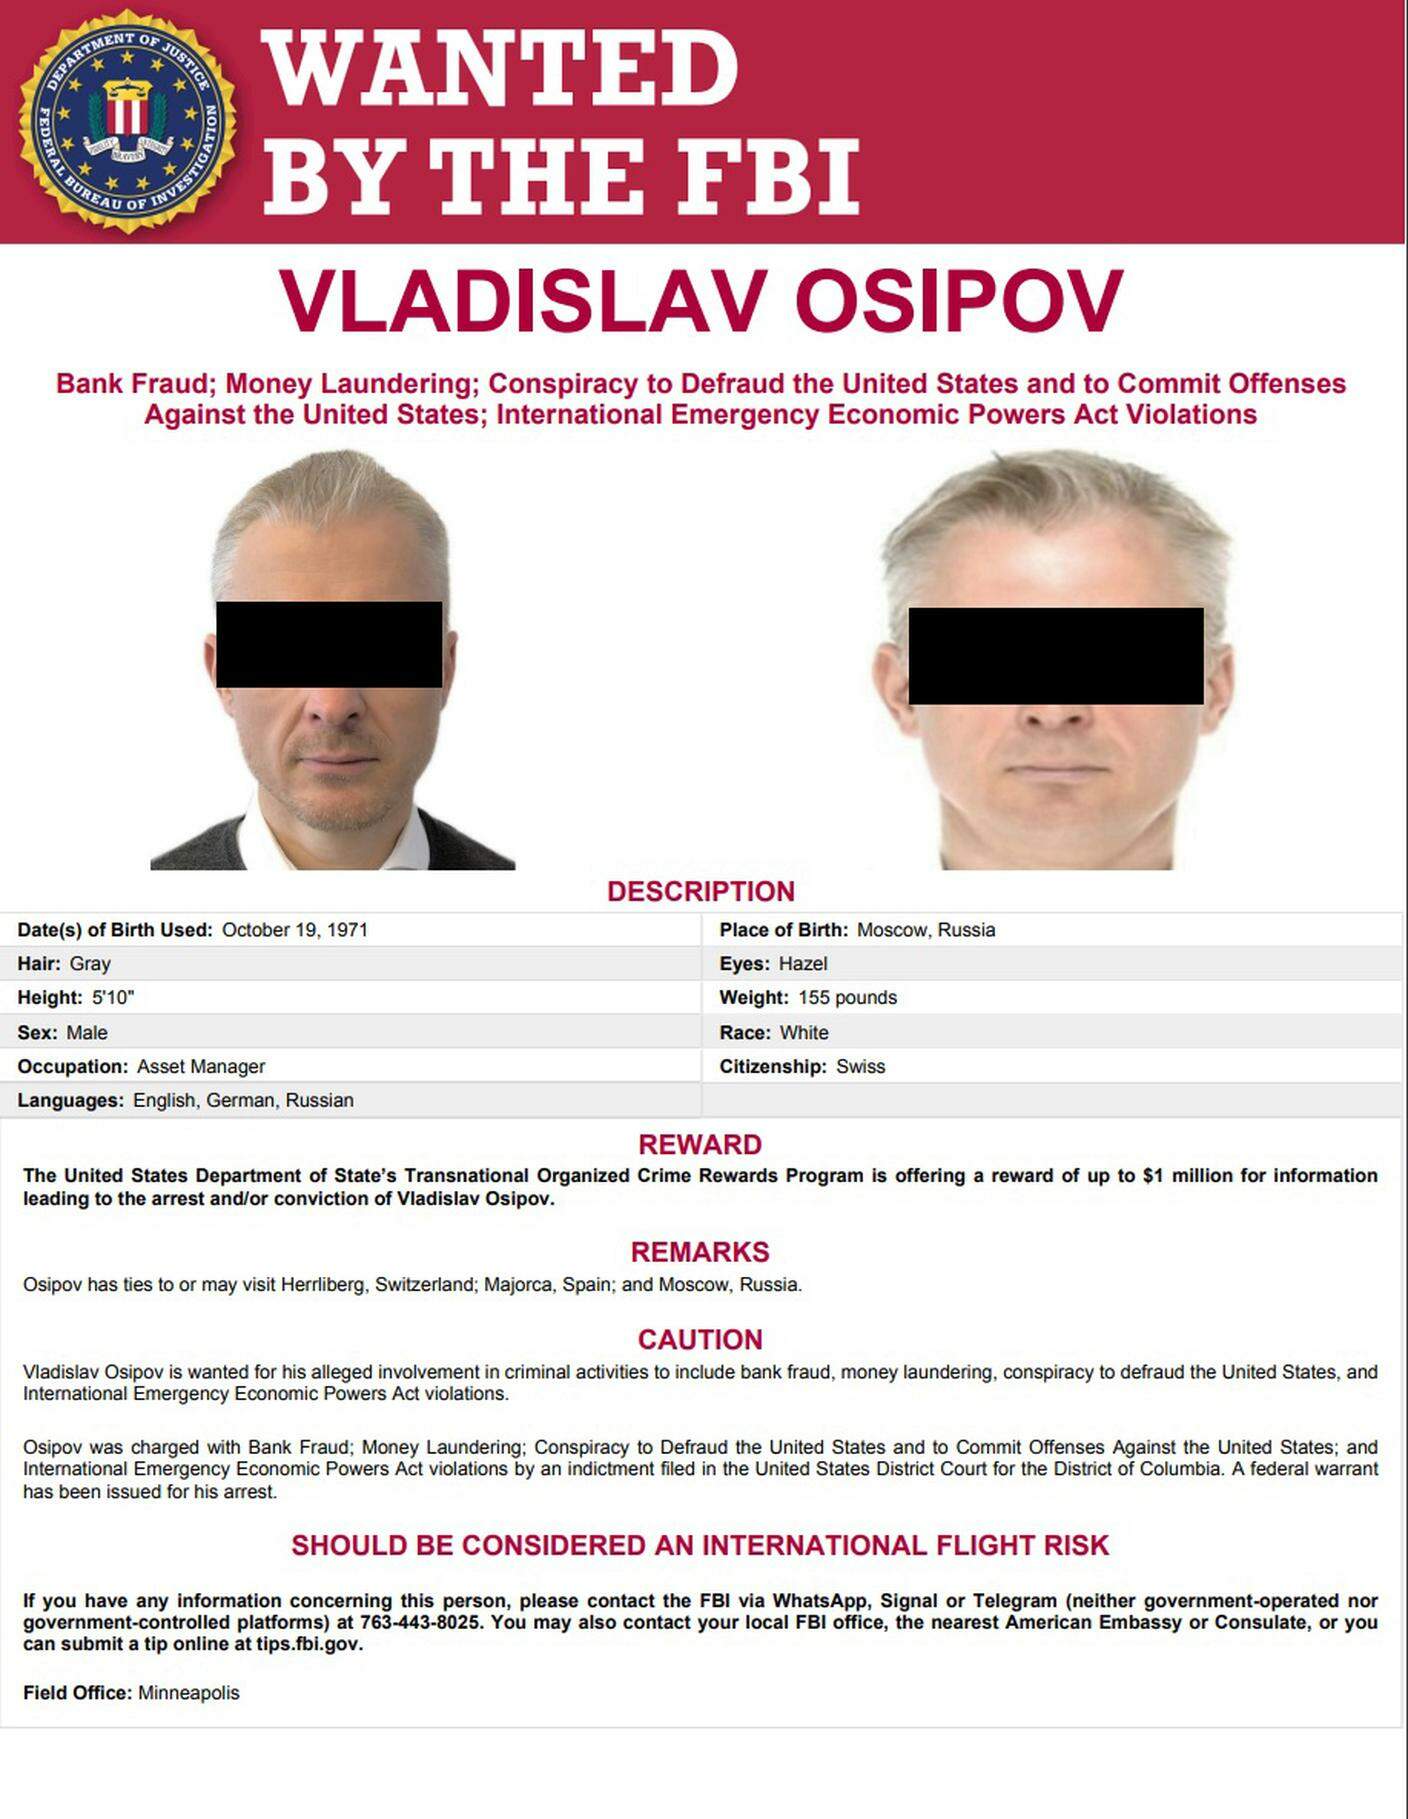 Госдепартамент США (МИД страны) обещает выплатить миллион долларов тому, кто укажет местонахождение Владислава Осипова, подозреваемого в причастности к международной организованной преступной группировке